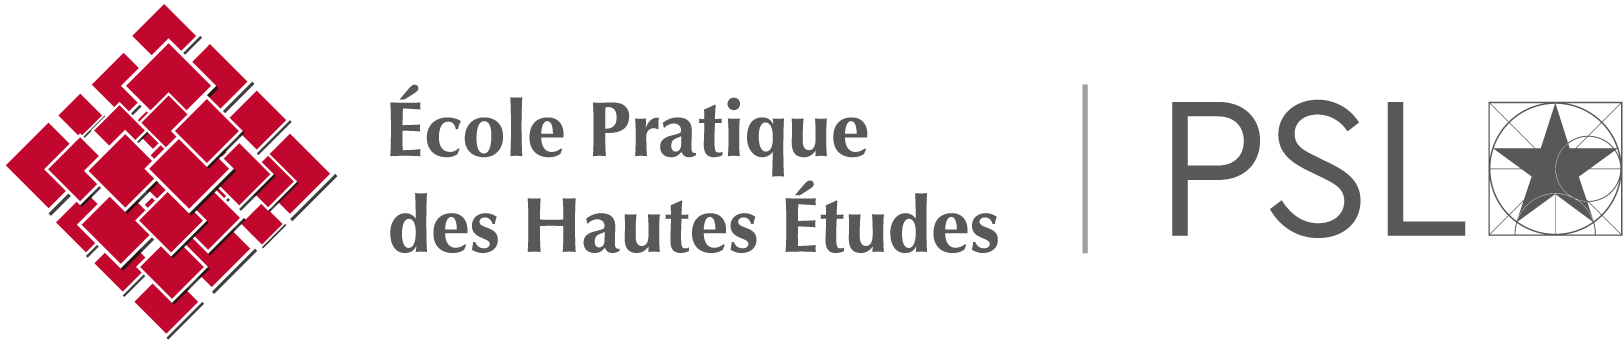 École Pratique des Hautes Études - PSL